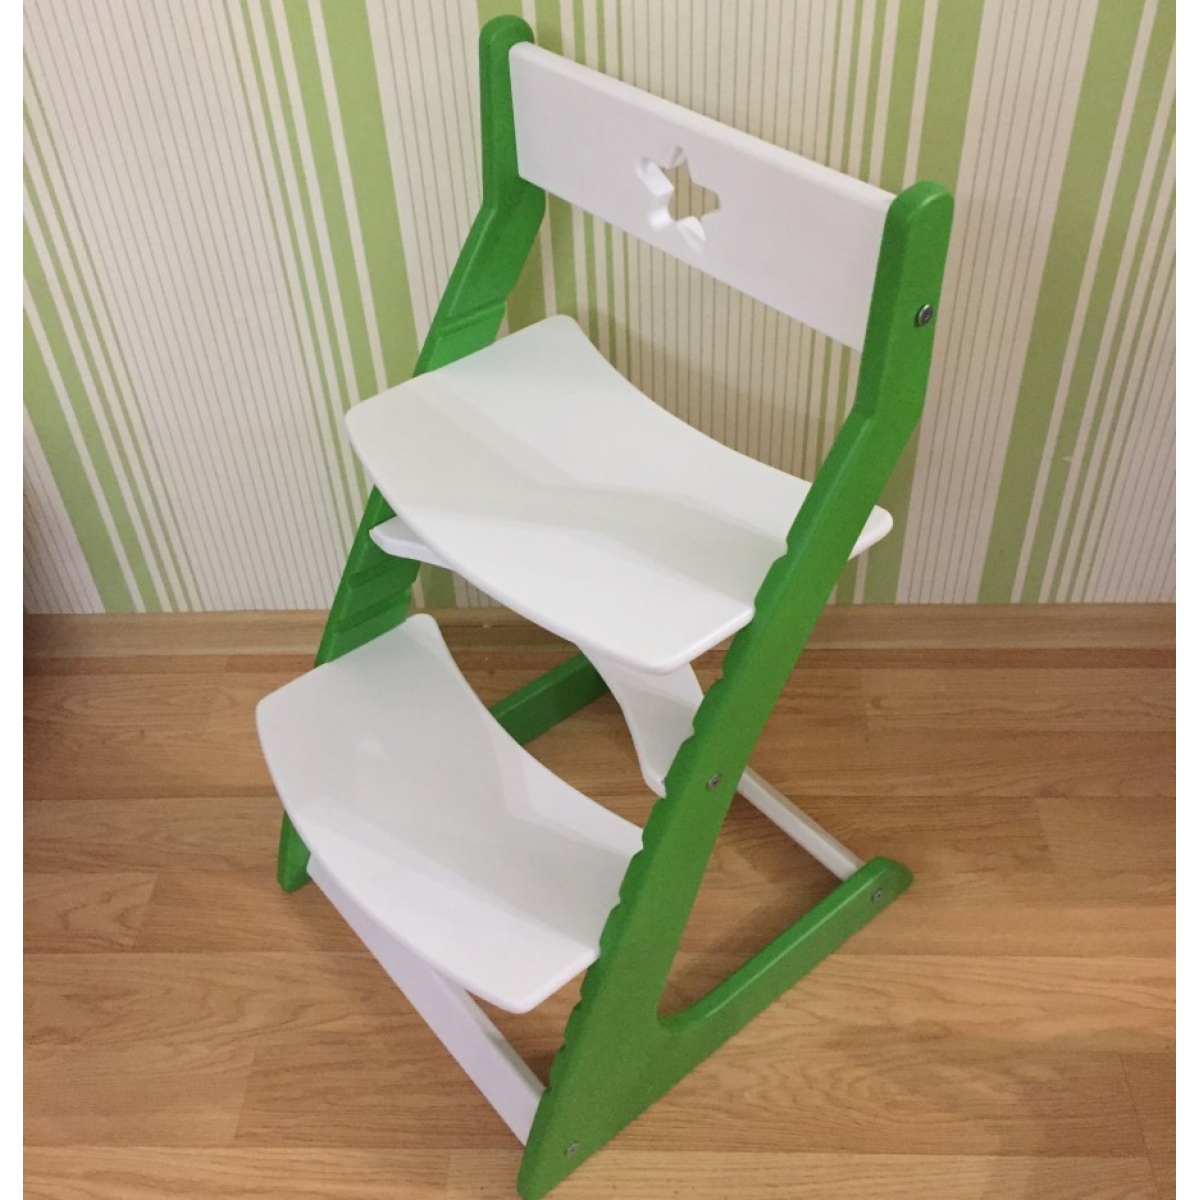 Детский растущий регулируемый стул Ростик/Rostik (бело-зеленый)